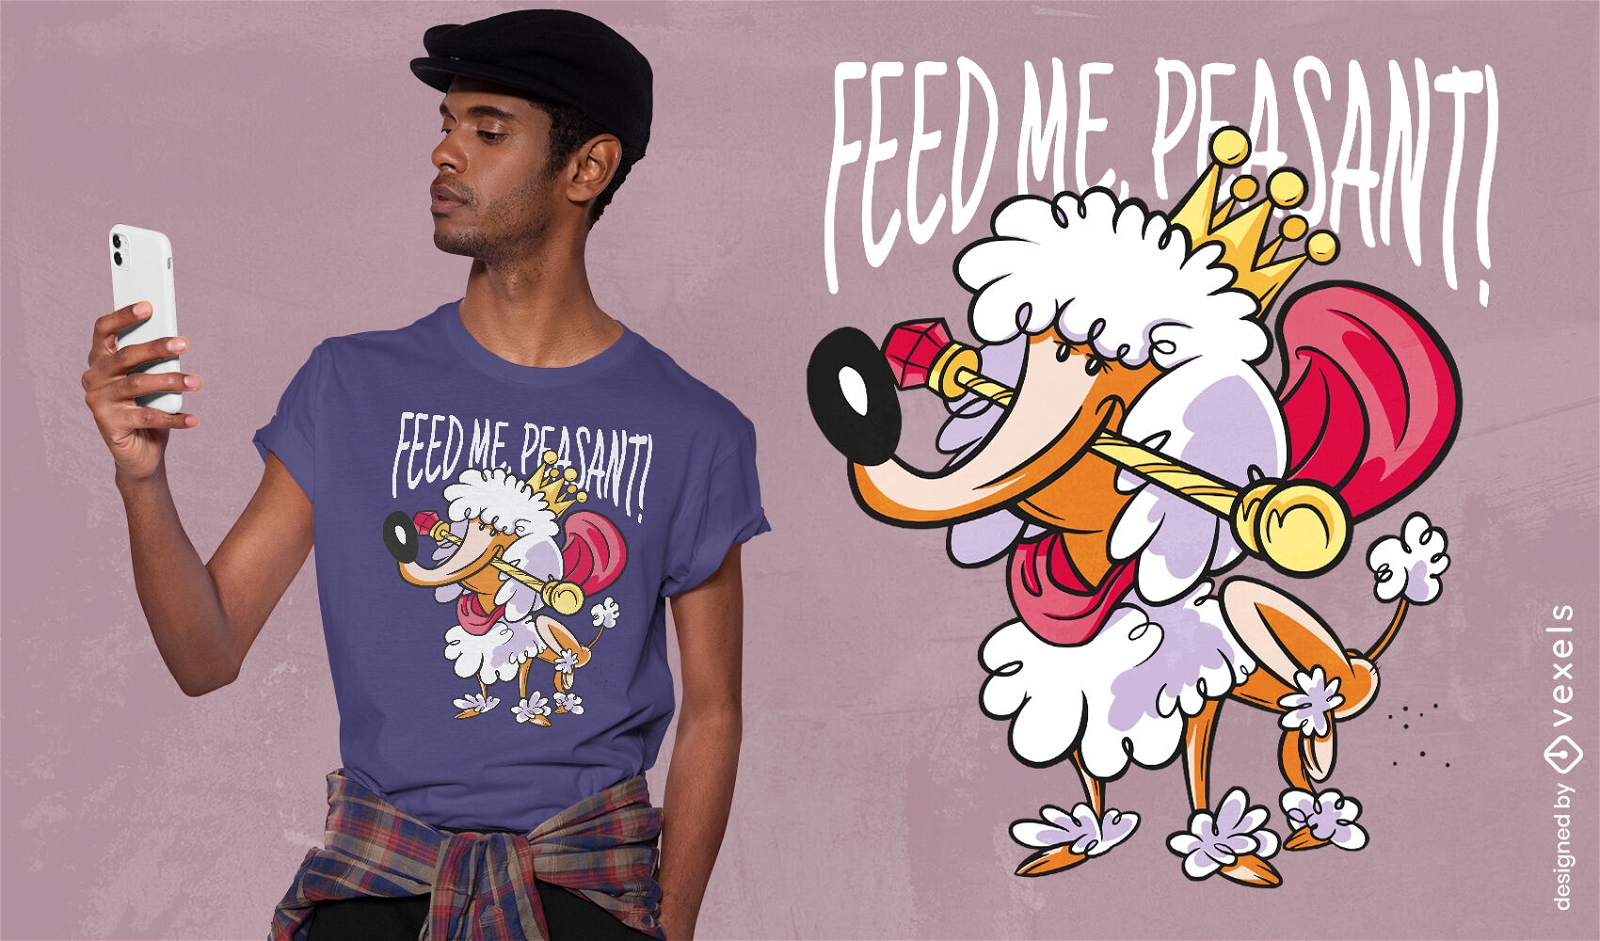 Füttere mich Bauernpudel-Hundet-shirt Entwurf